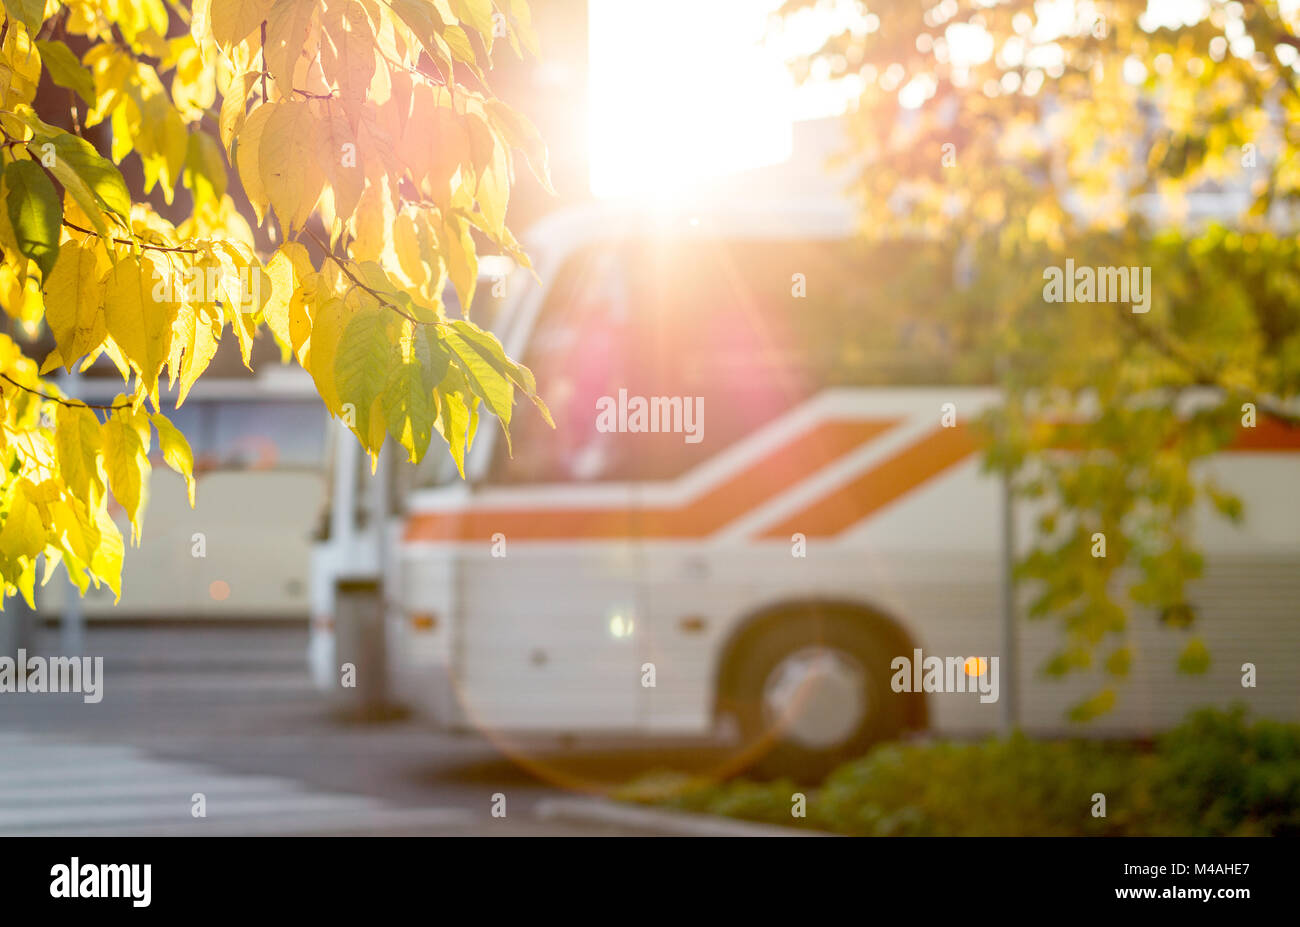 Bus, Haltestelle im Herbst bunte Blätter von Bäumen eingerahmt. Sonnige öffentliche Verkehrsmittel Konzept. Stockfoto